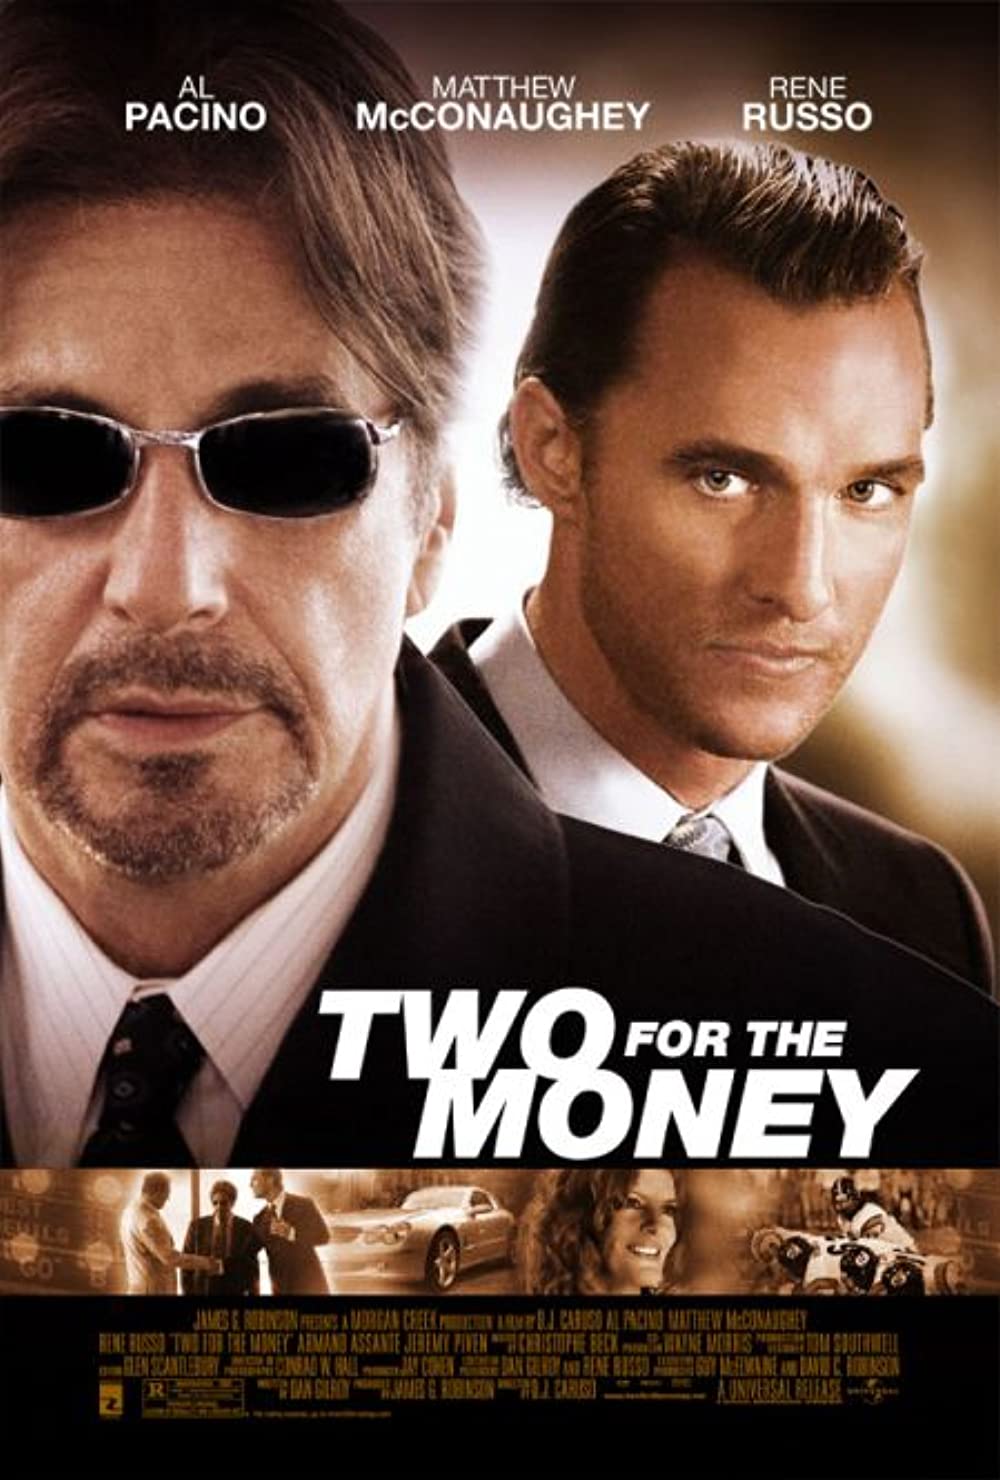 ดูหนังออนไลน์ฟรี Two For The Money (2005) พลิกเหลี่ยม มนุษย์เงินล้าน หนังเต็มเรื่อง หนังมาสเตอร์ ดูหนังHD ดูหนังออนไลน์ ดูหนังใหม่